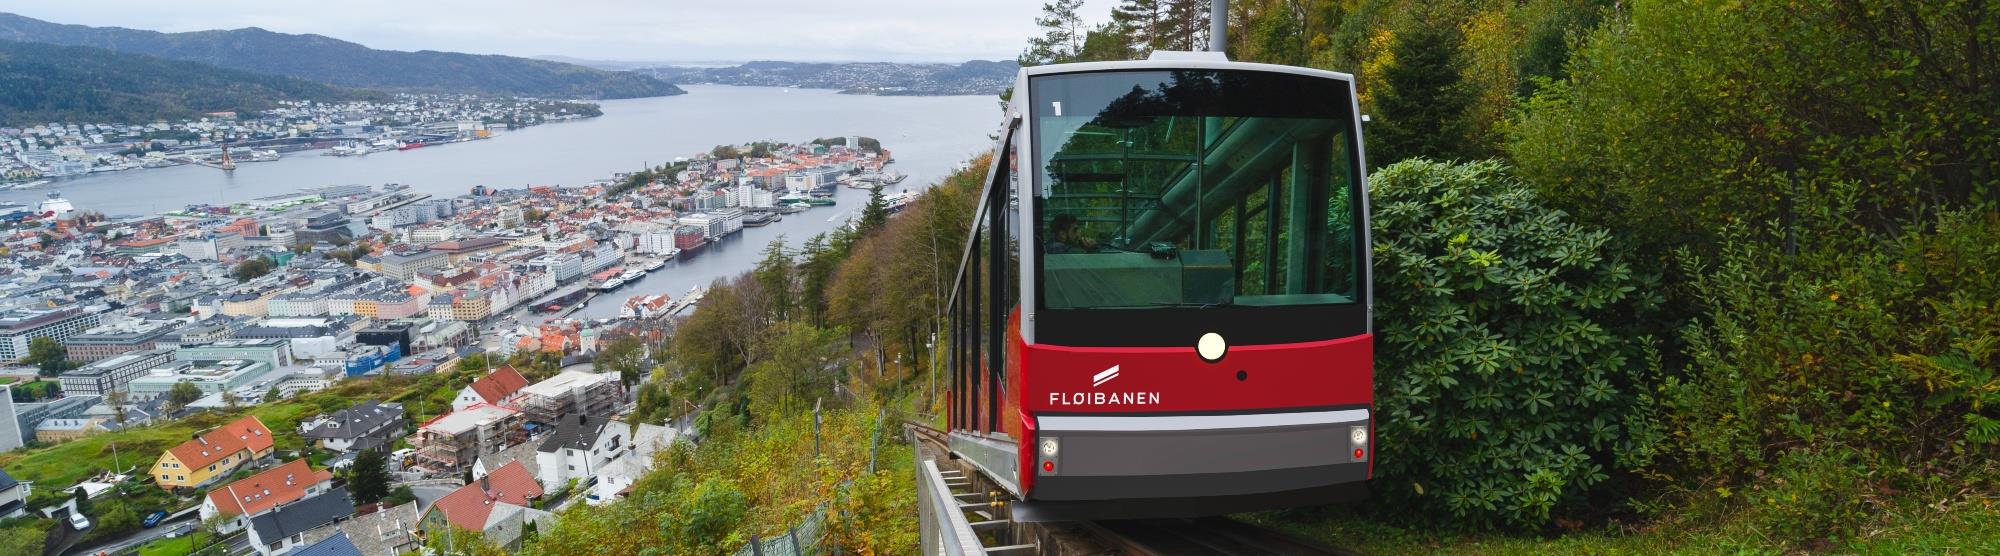 Sehenswürdigkeiten in Bergen